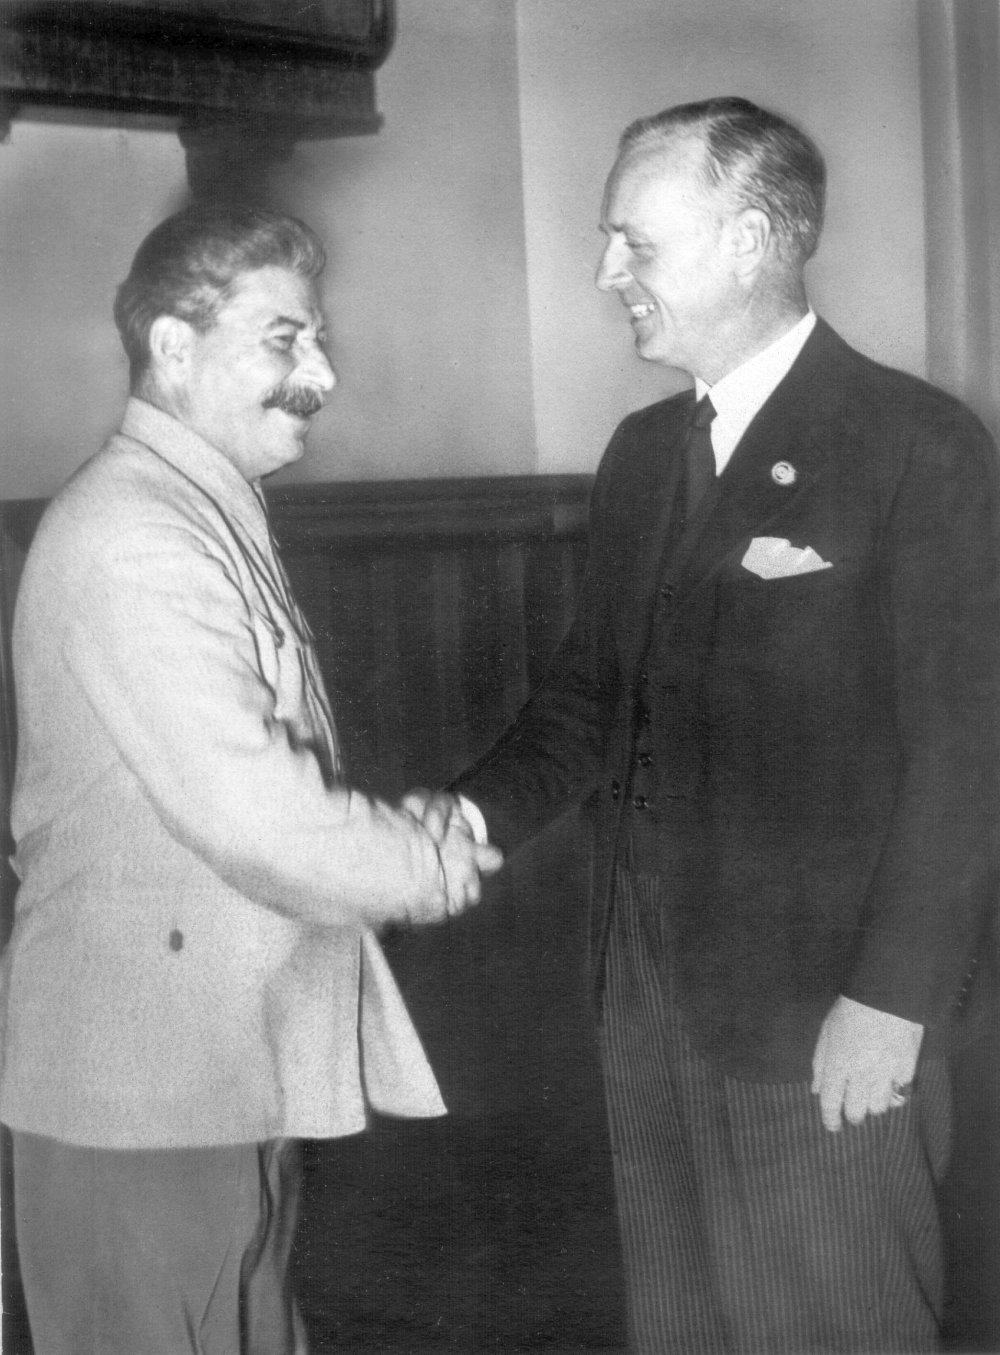 Переговоры в августе 1939